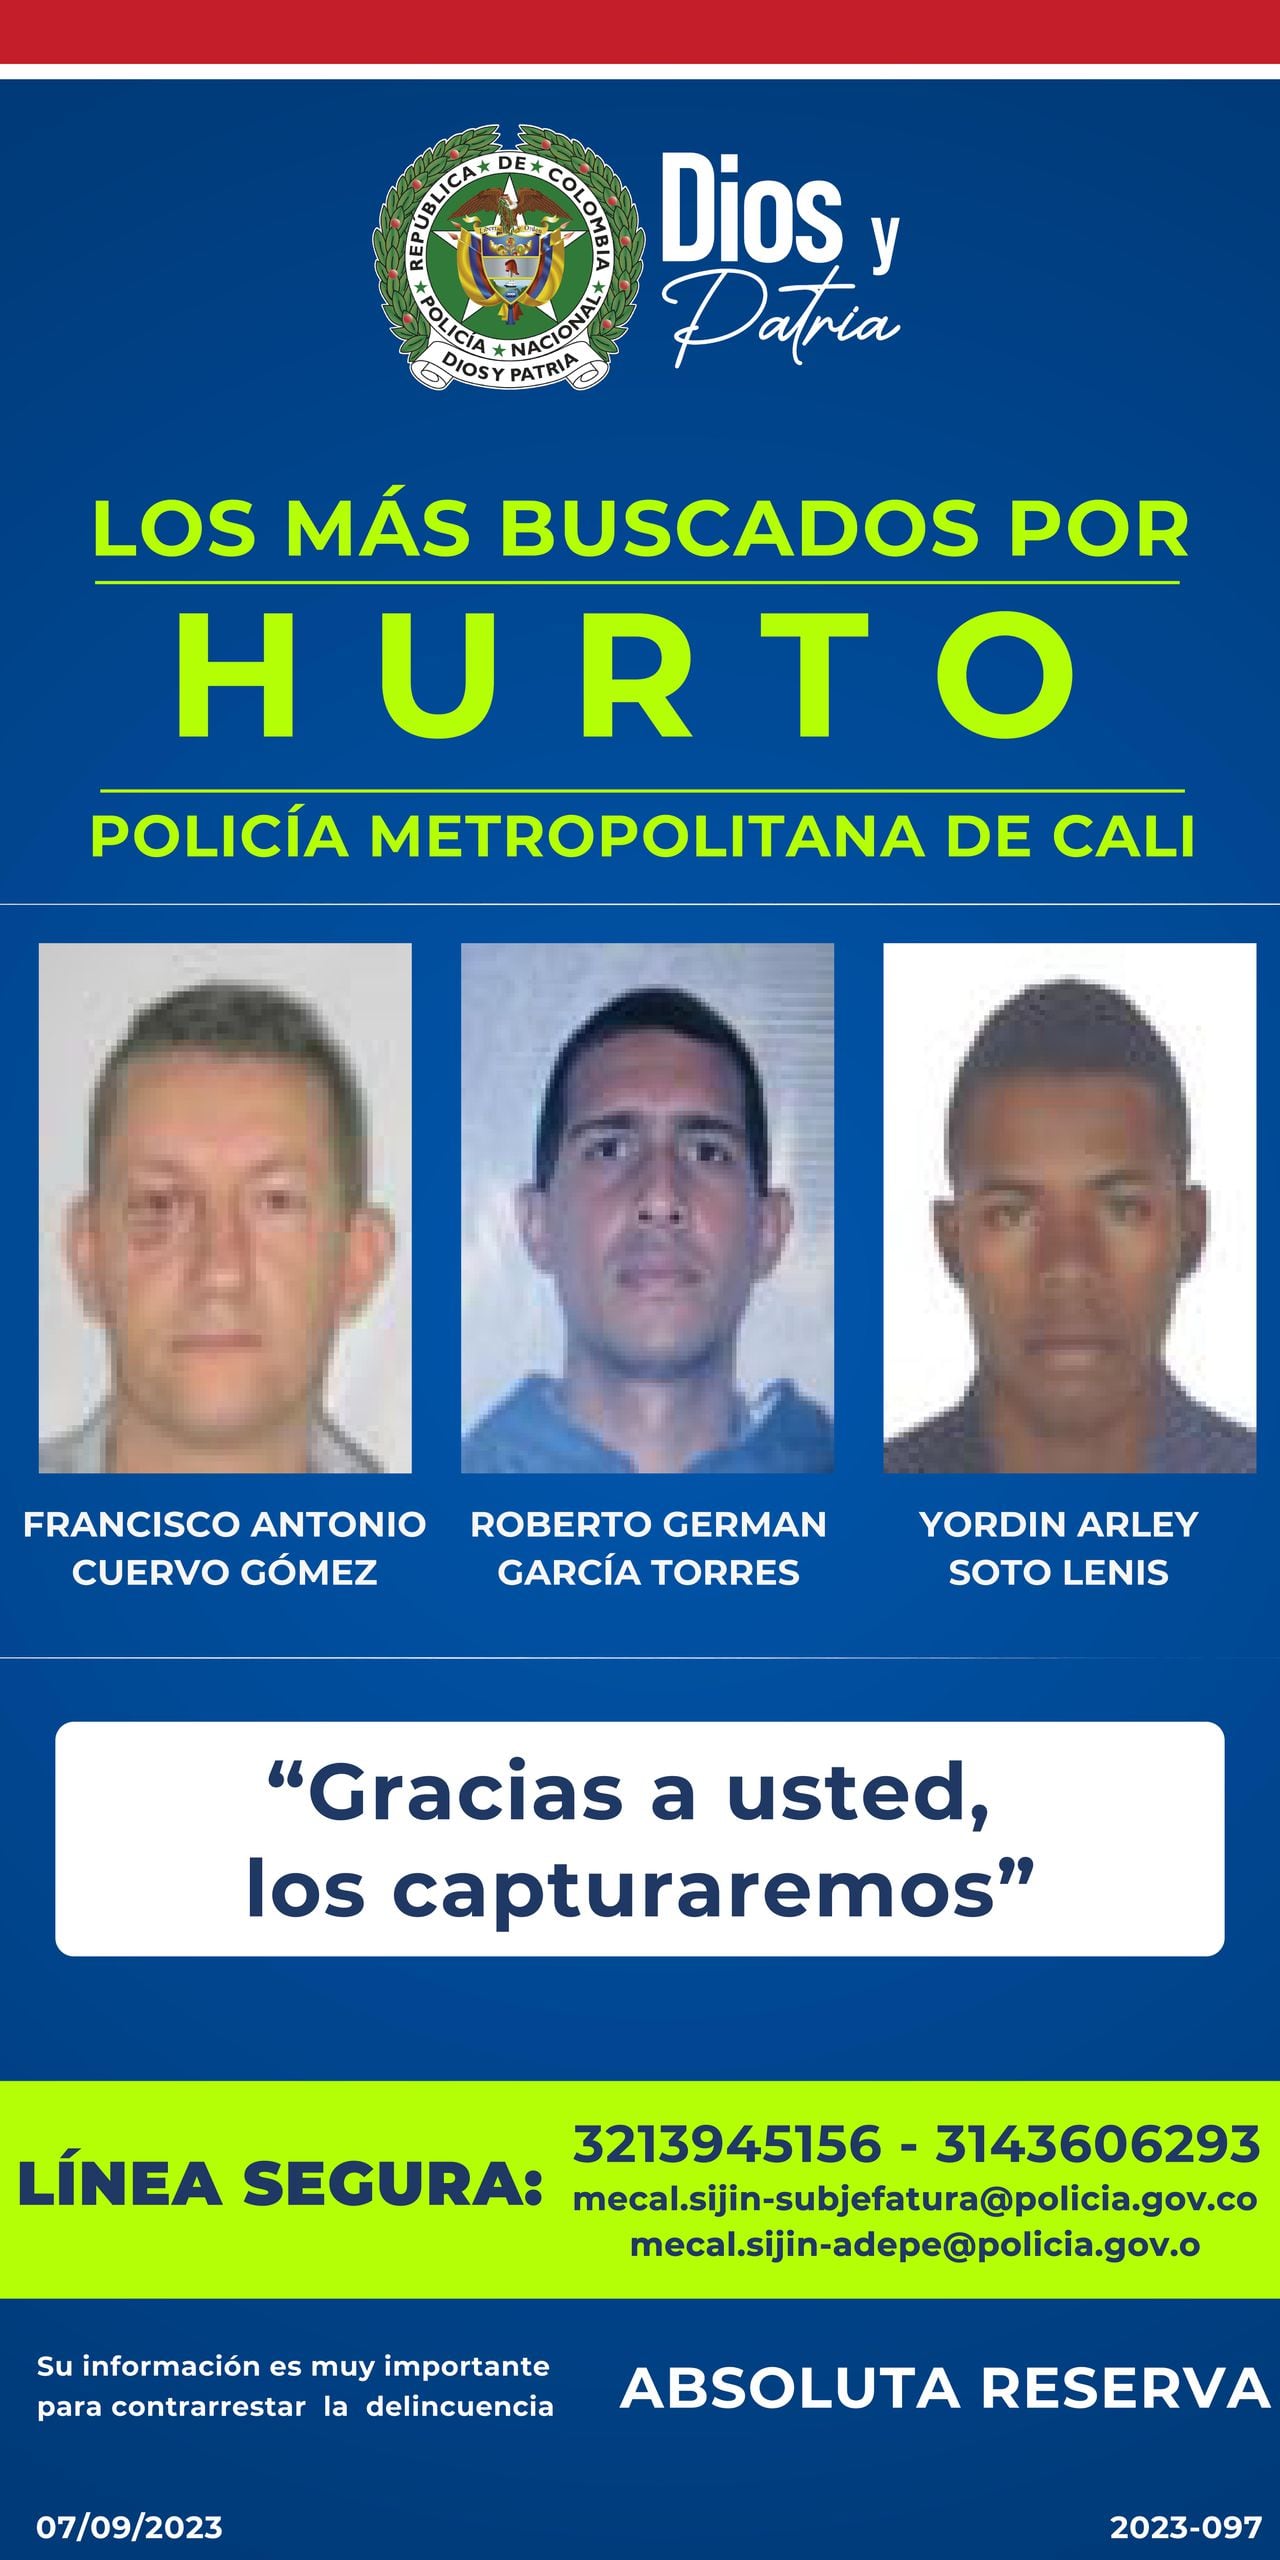 De los 14 delincuentes buscados por la Policía, tres son señalados por el delito de hurto.